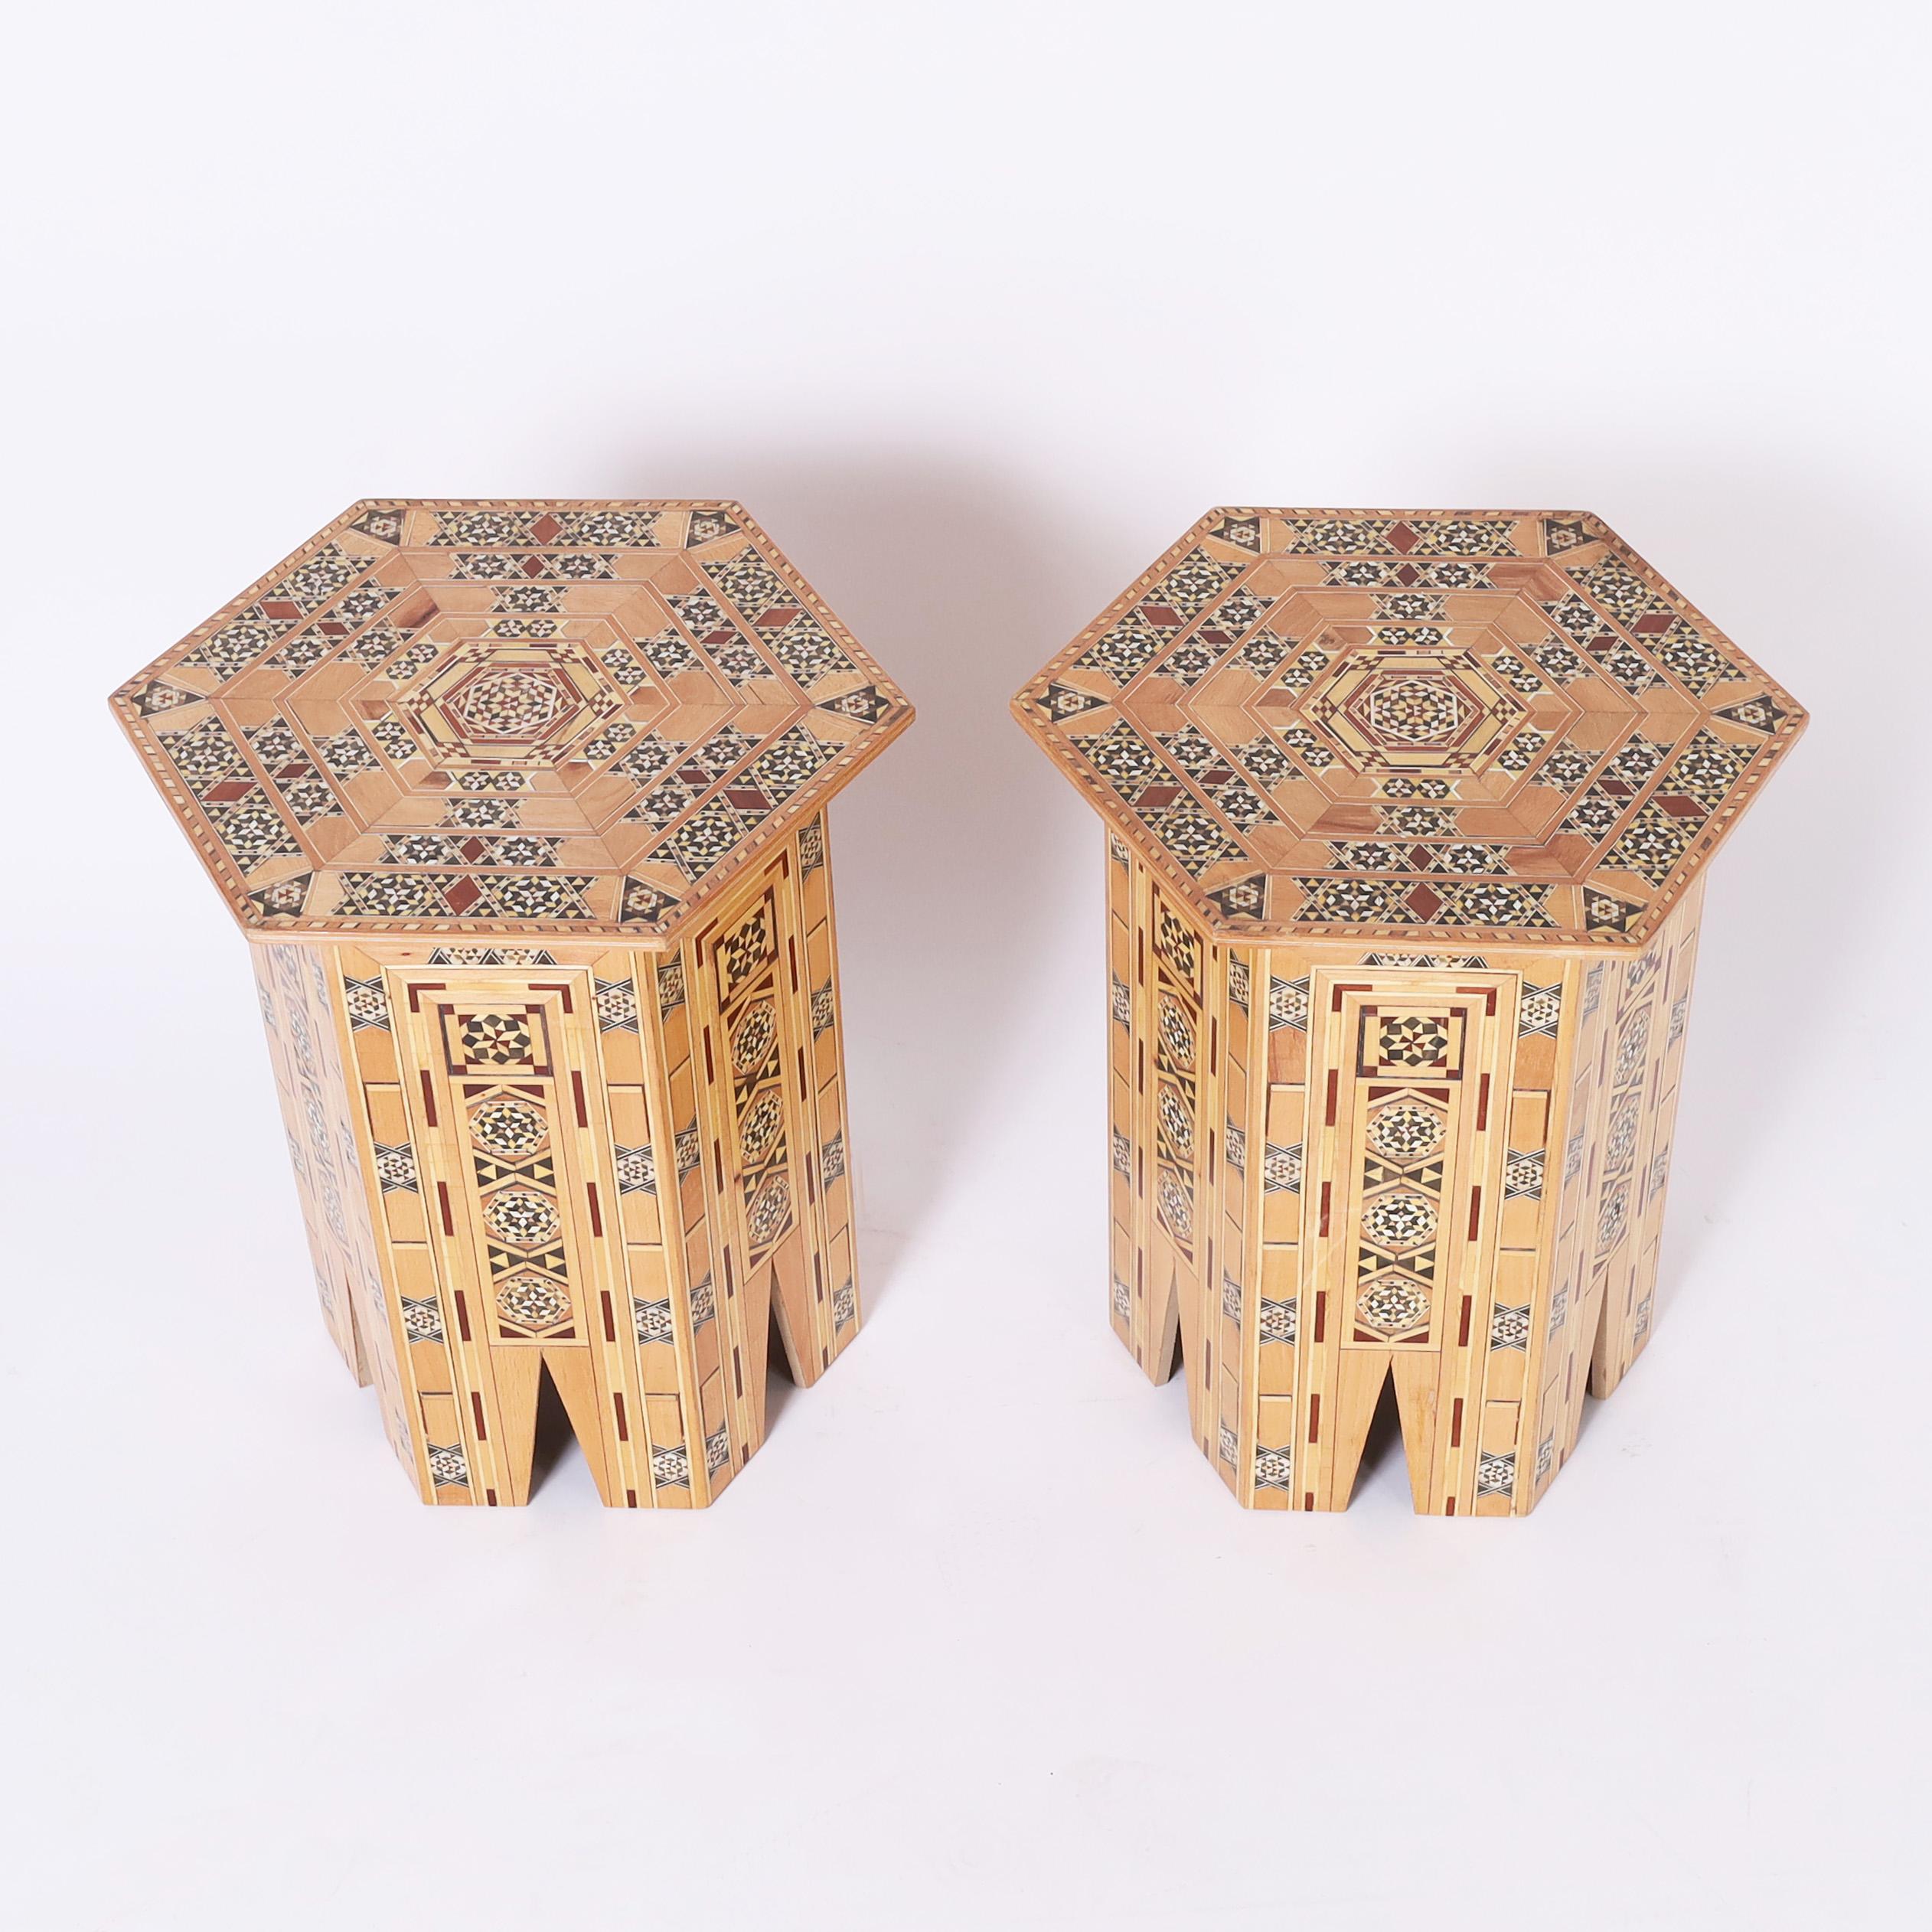 Impressionnante paire d'étagères marocaines avec une marqueterie géométrique élaborée composée de bois exotiques tels que l'acajou, l'ébène, le noyer, le bois blanc et le peuplier jaune sur une forme hexagonale avec des arcs stylisés. 